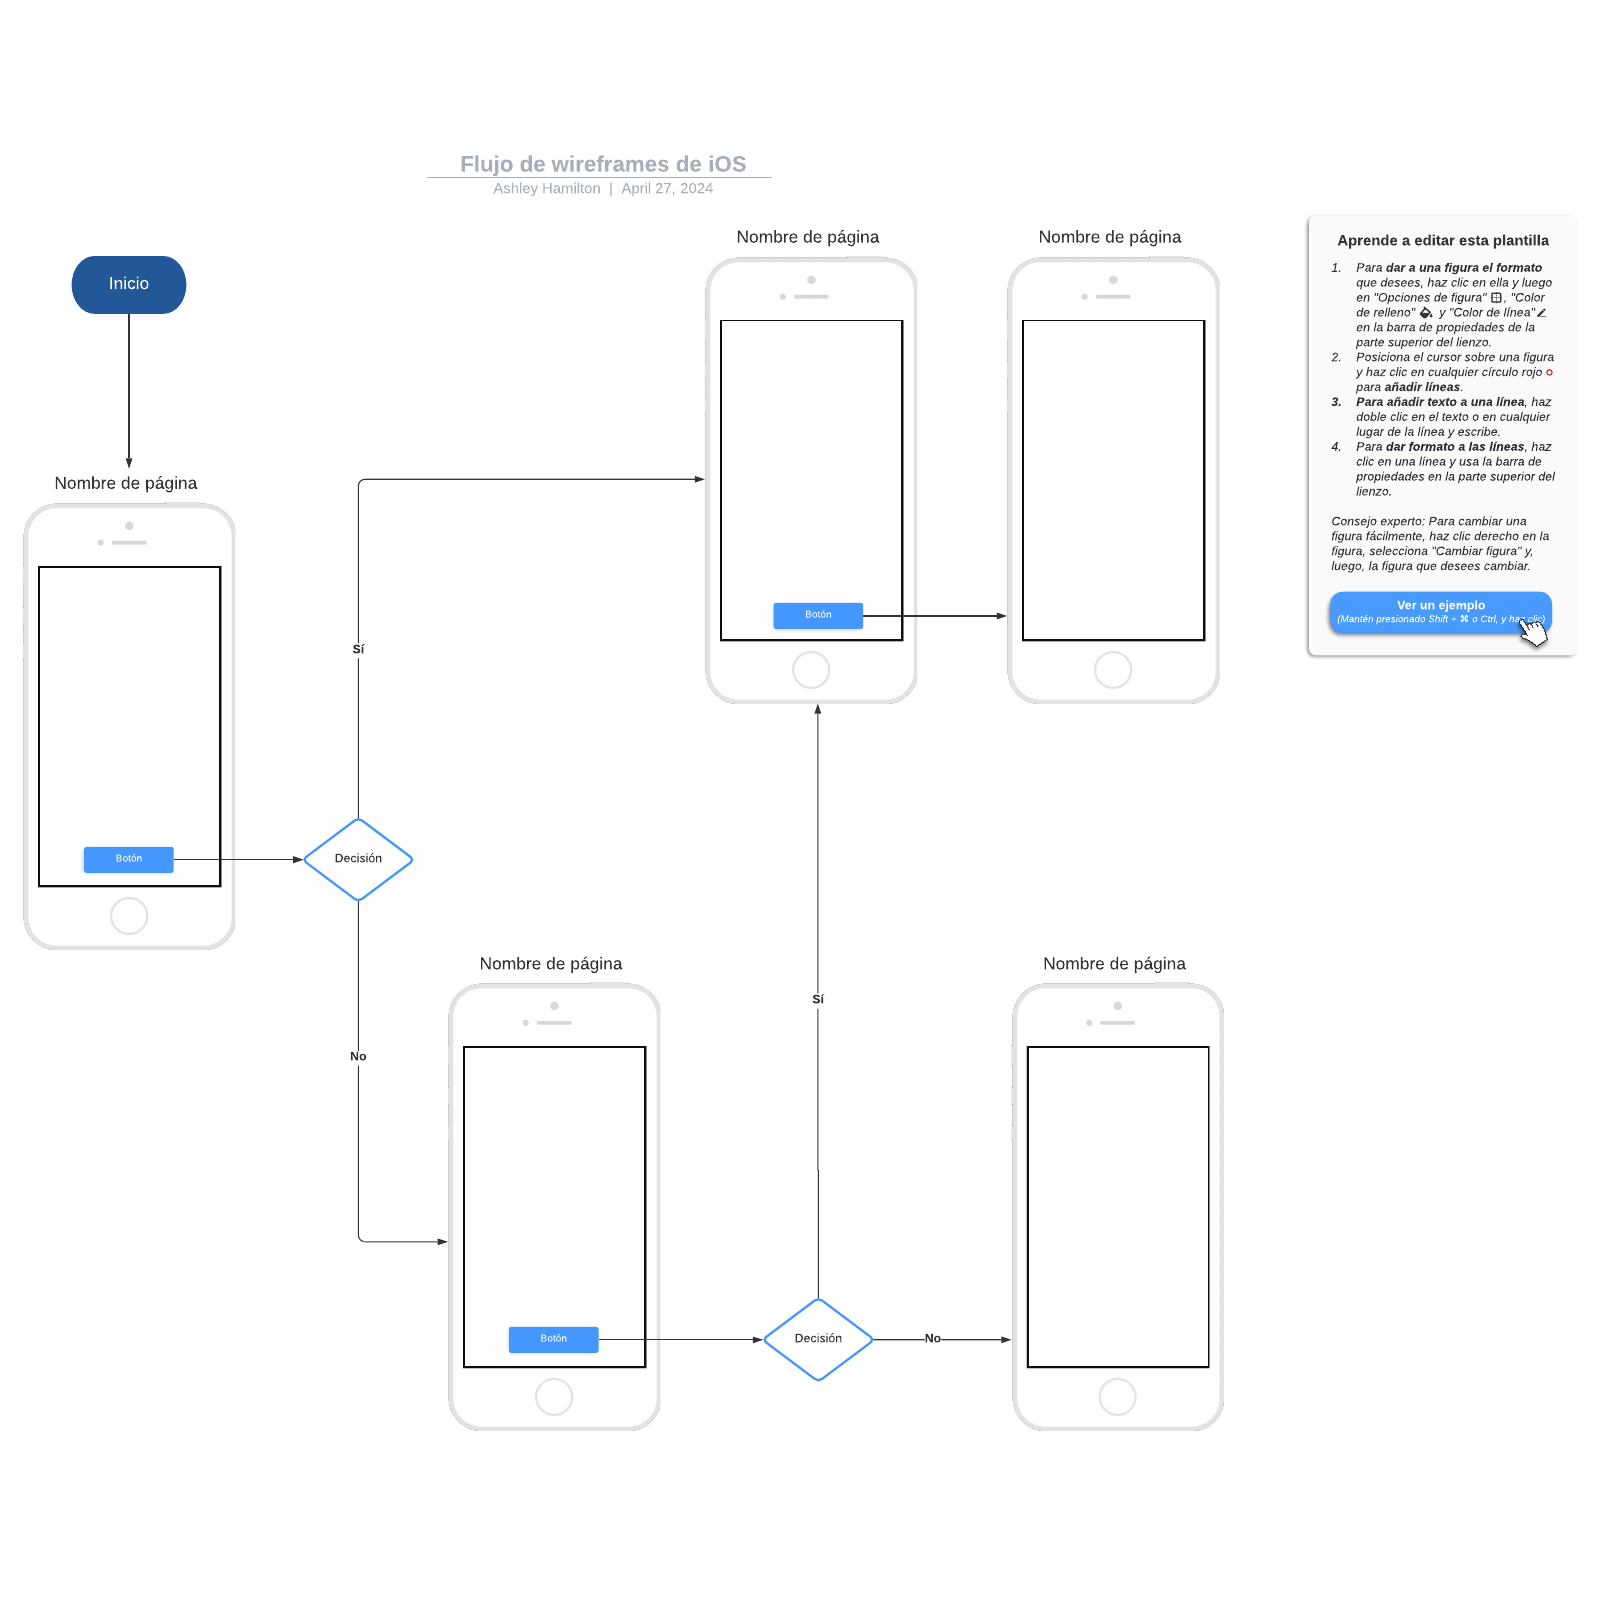 Flujo de wireframes de iOS example